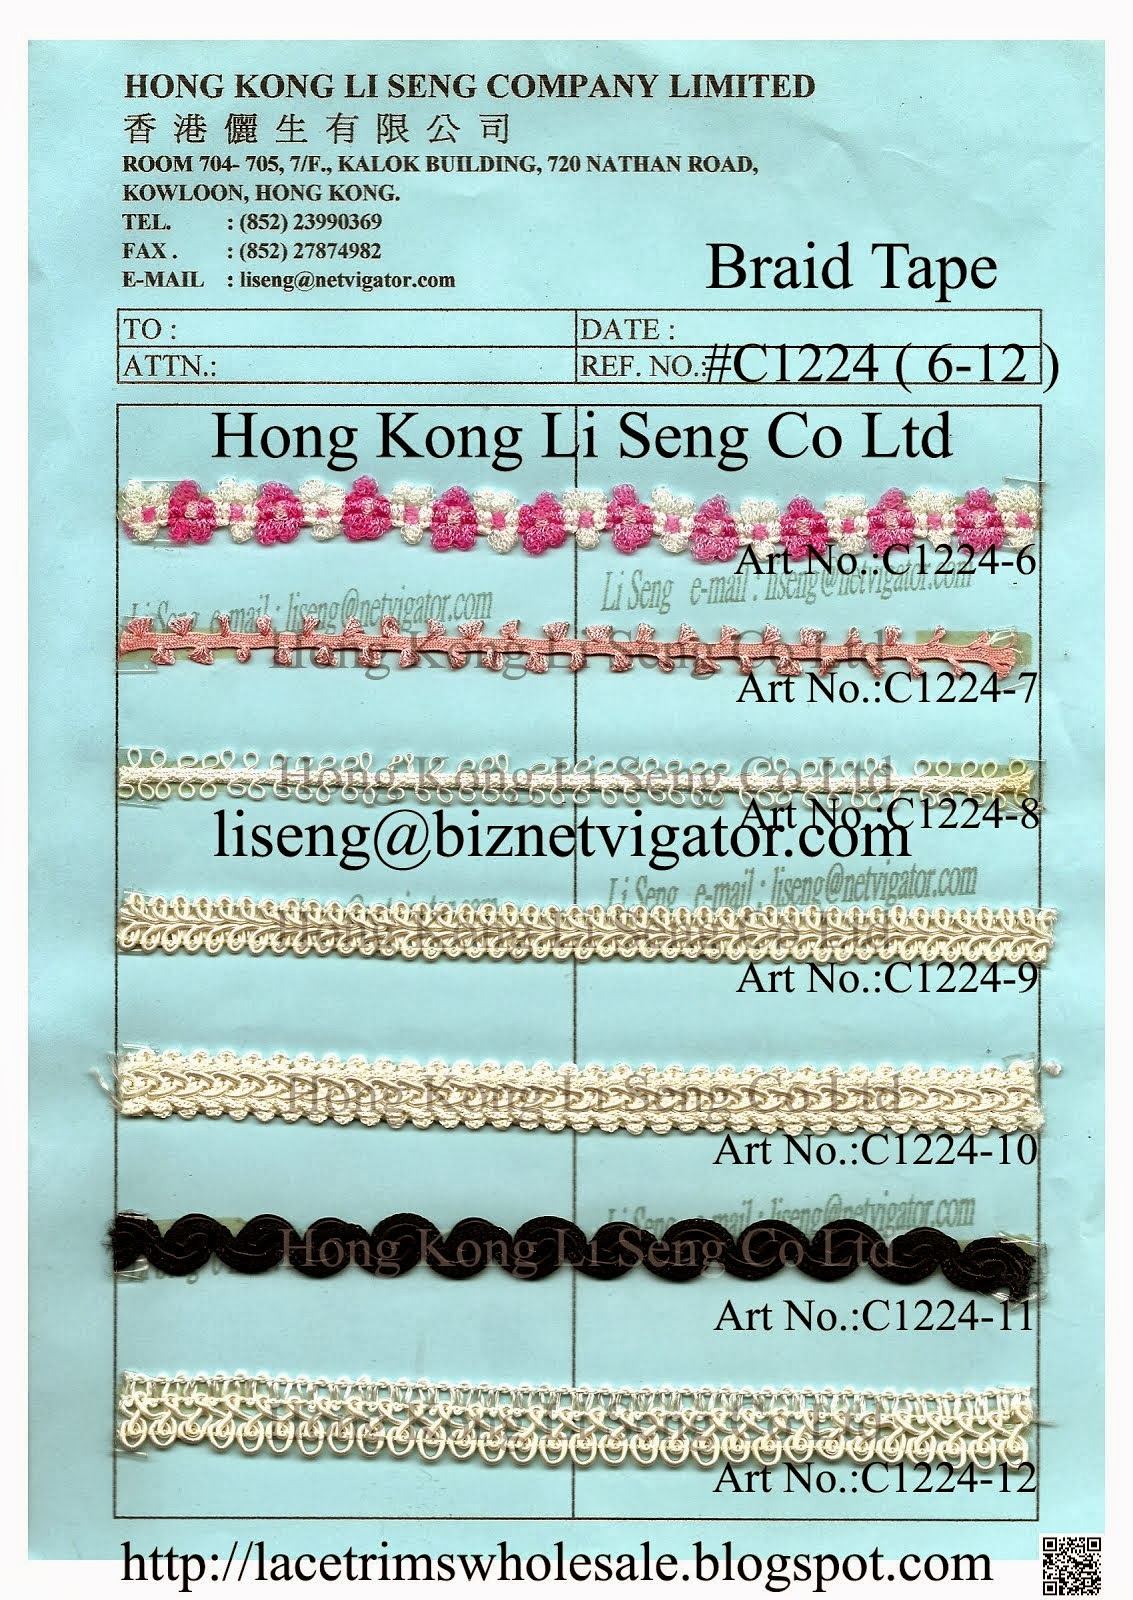 Braid Tape Manufacturer - Hong Kong Li Seng Co Ltd